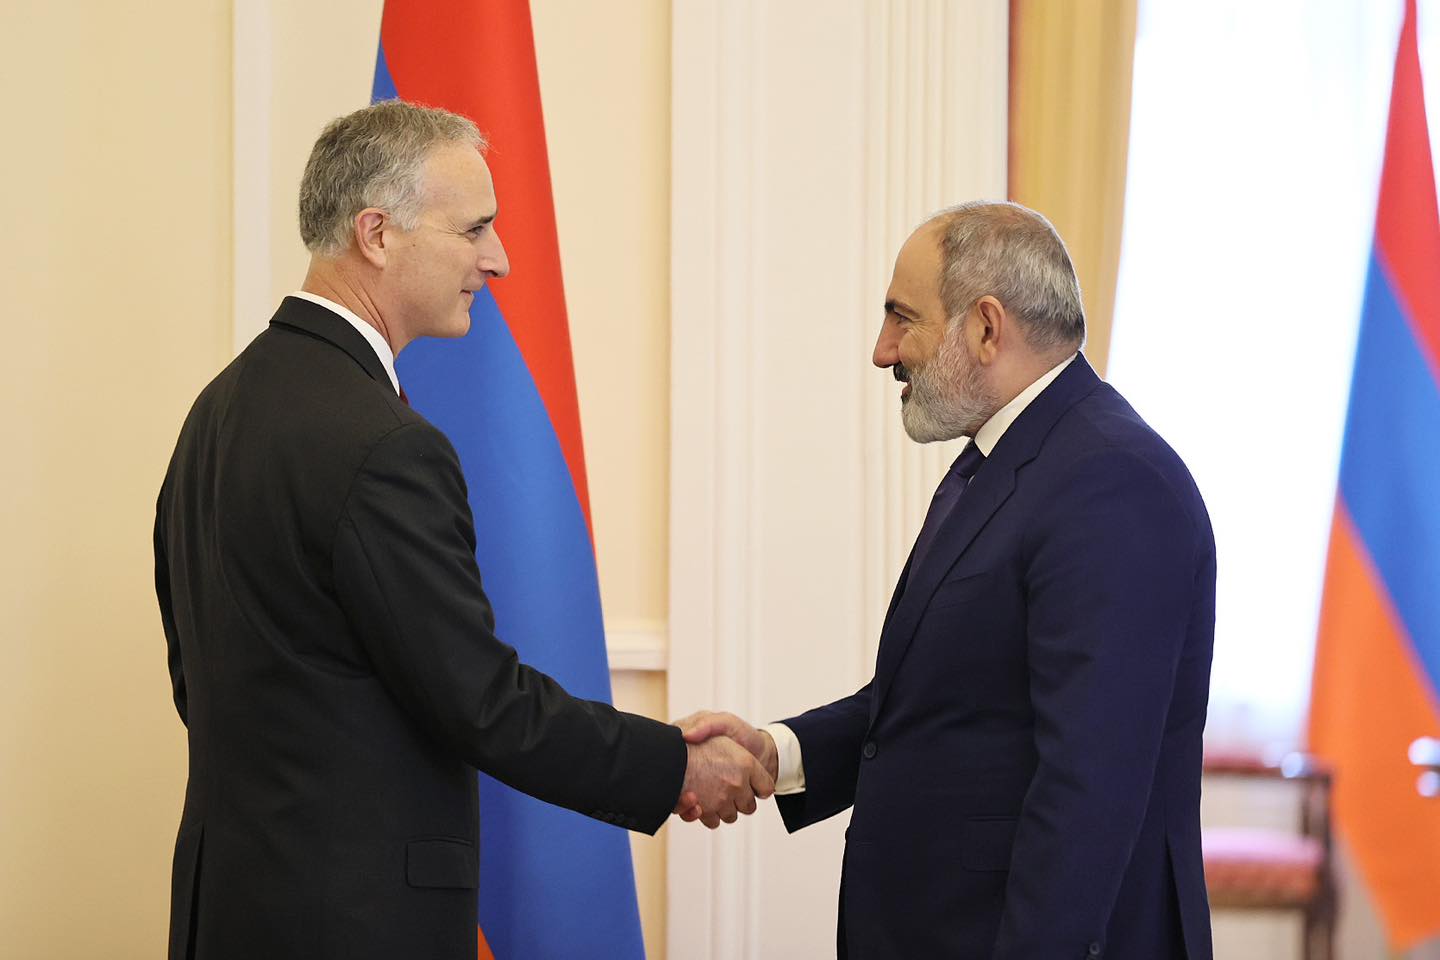 Пашинян и Боно обсудили процесс урегулирования отношений Армении и Азербайджана